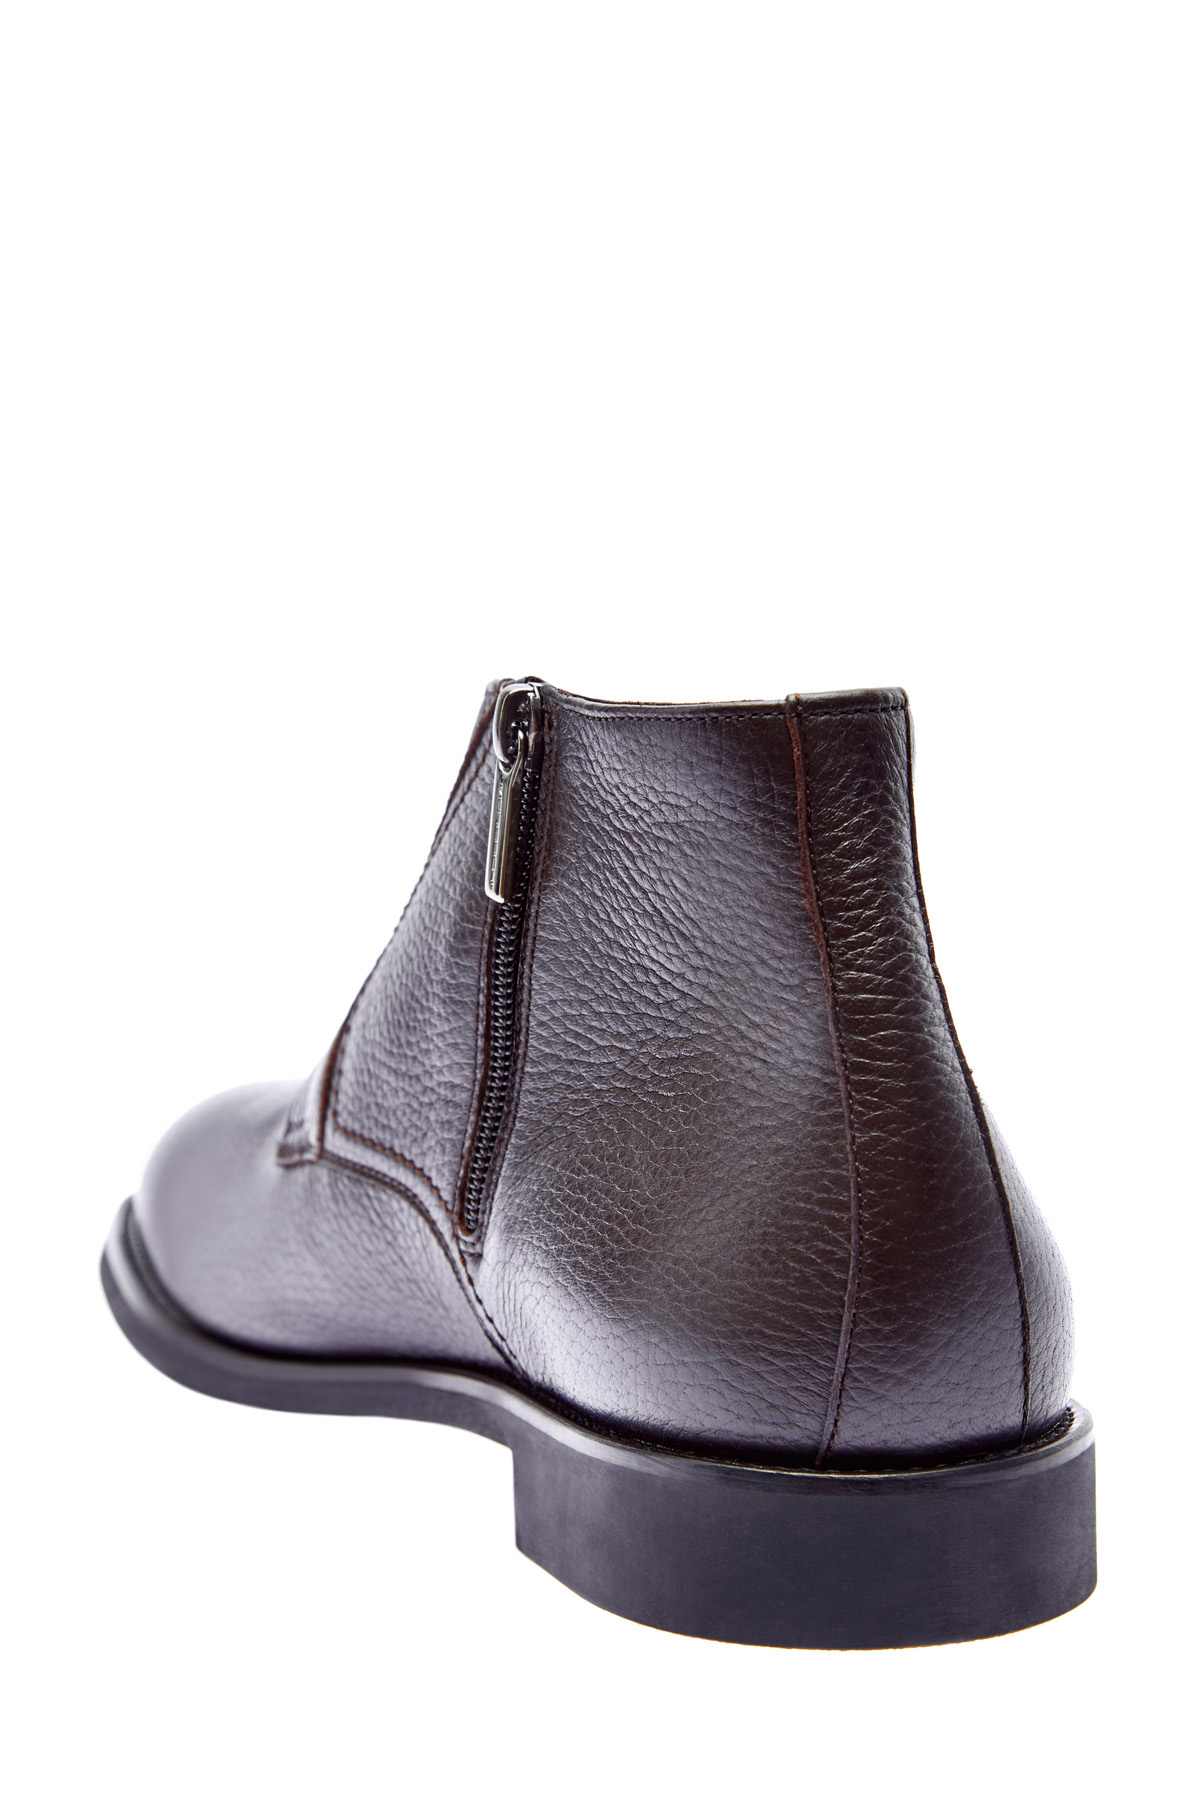 Высокие ботинки-дерби ручной работы из кожи оленя MORESCHI, цвет коричневый, размер 42.5;43;43.5 - фото 4